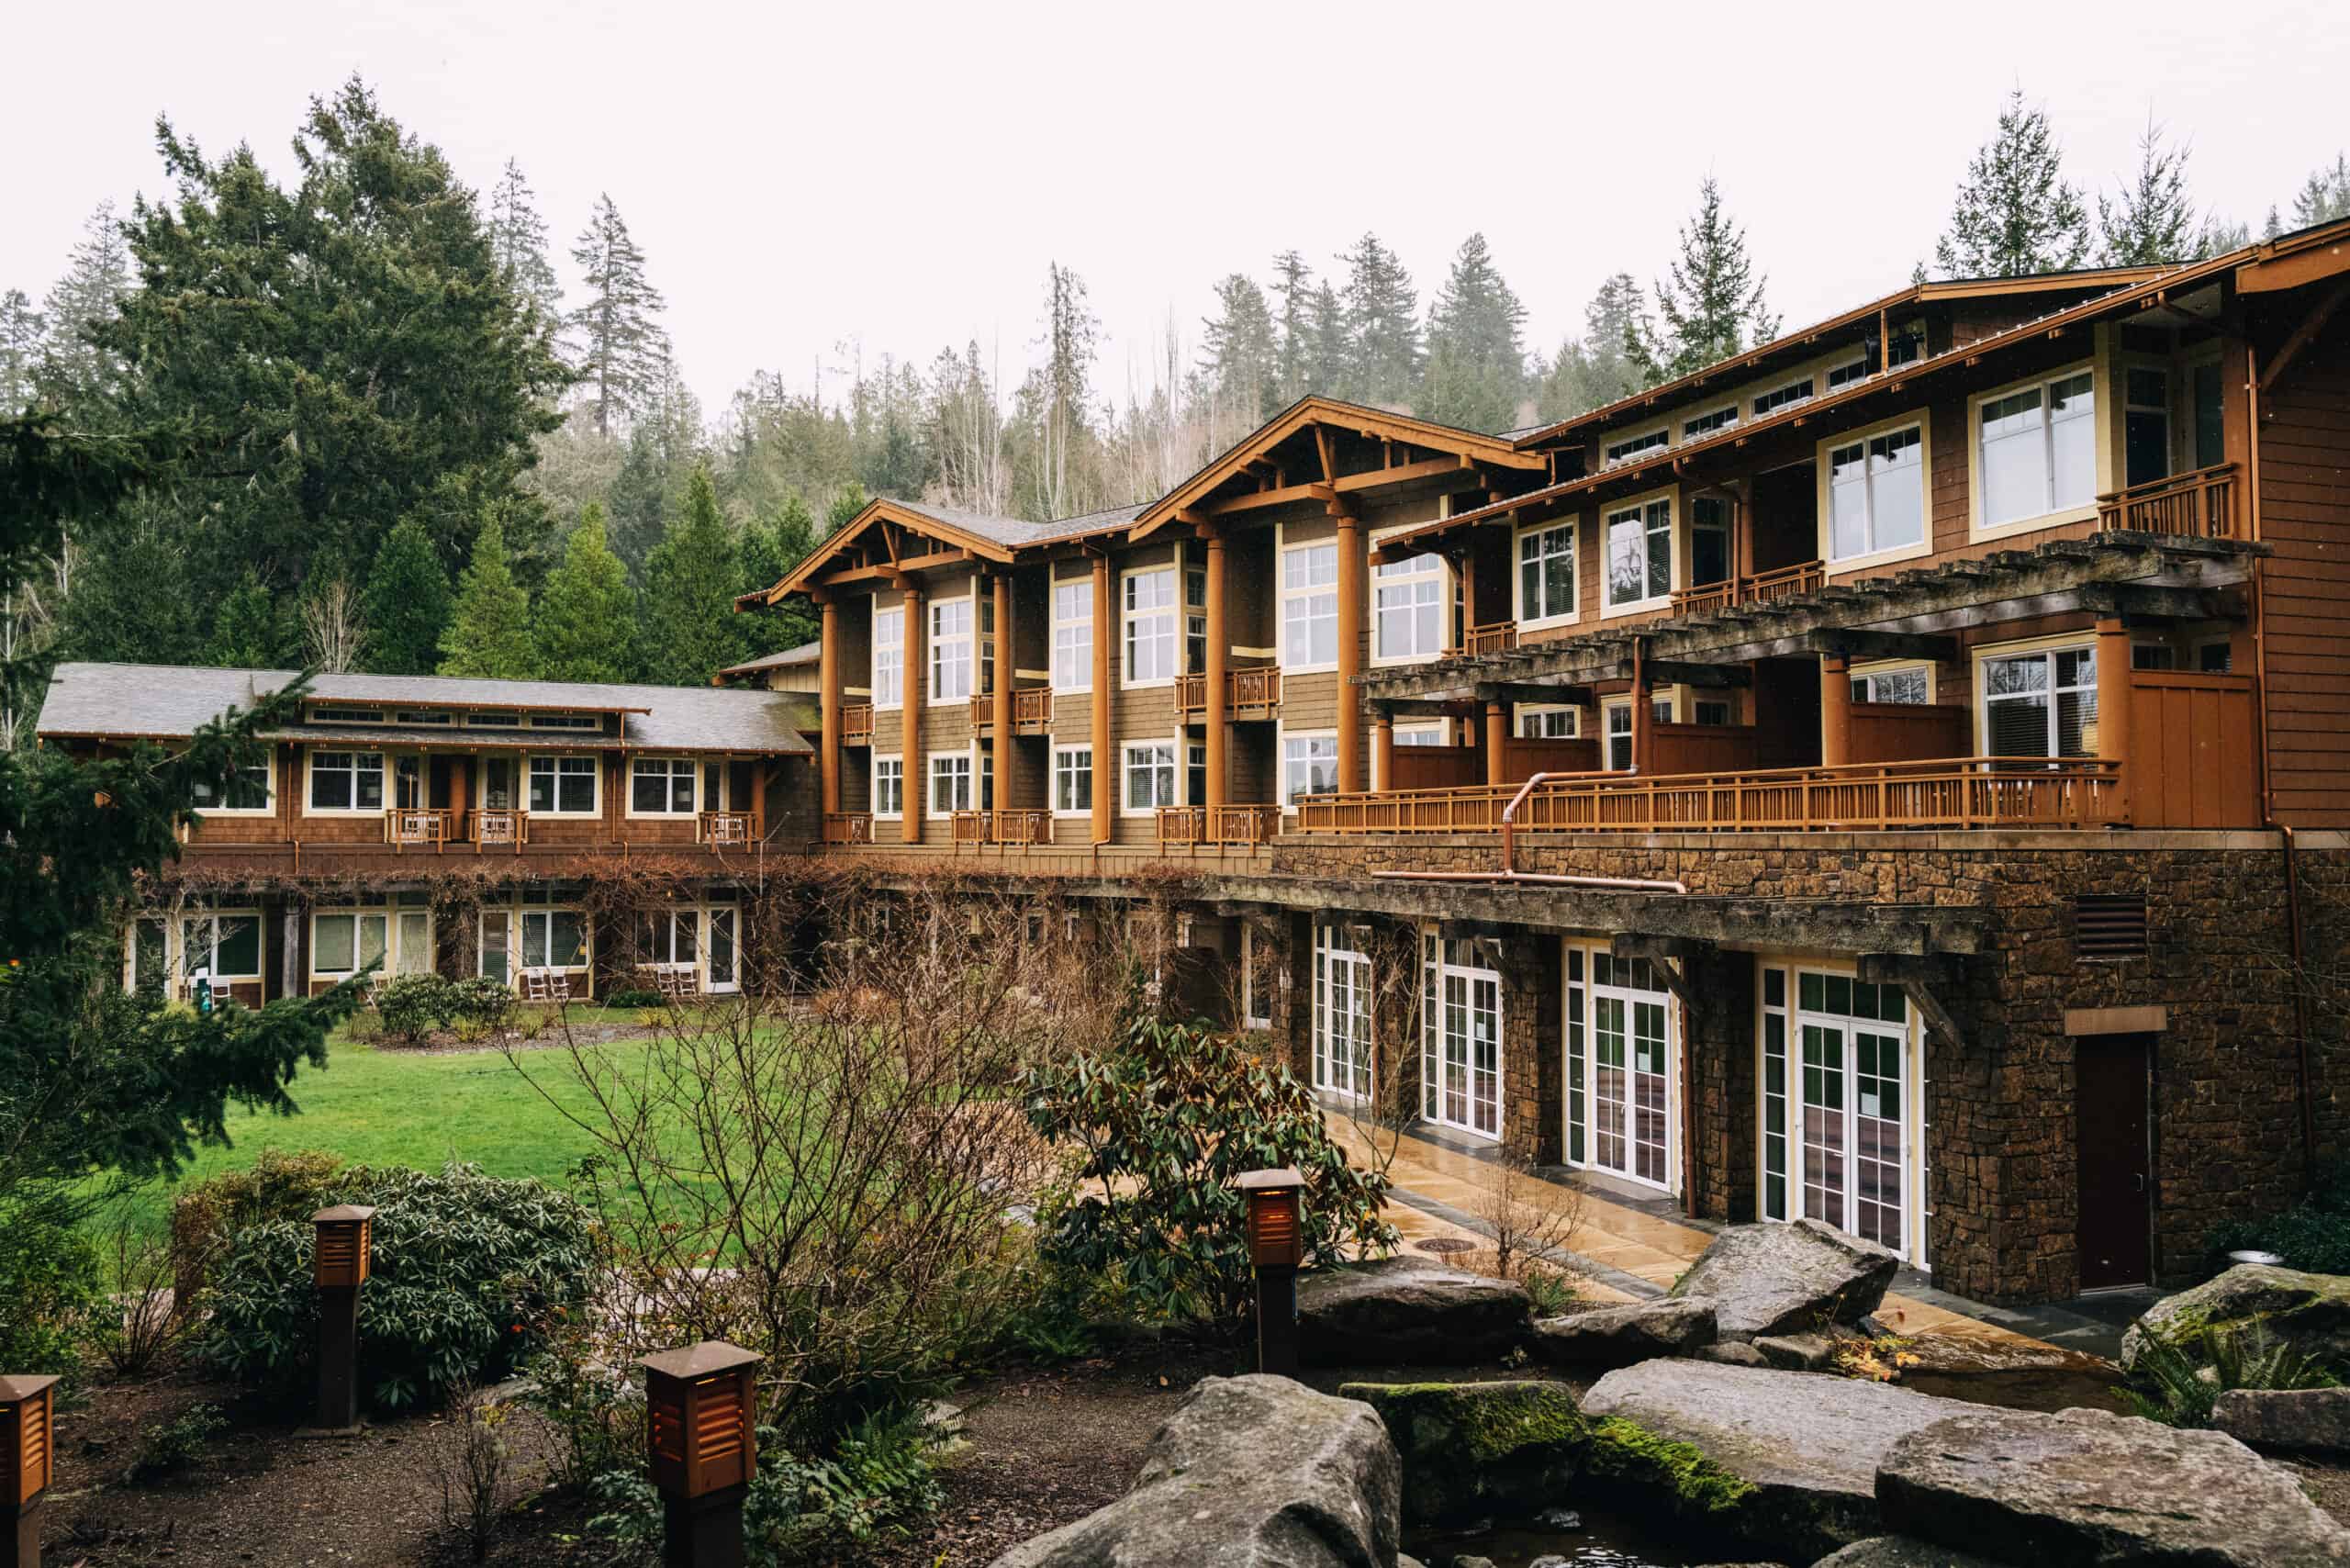 Best Pacific Northwest Resorts - Alderbrook Resort, Union, WA